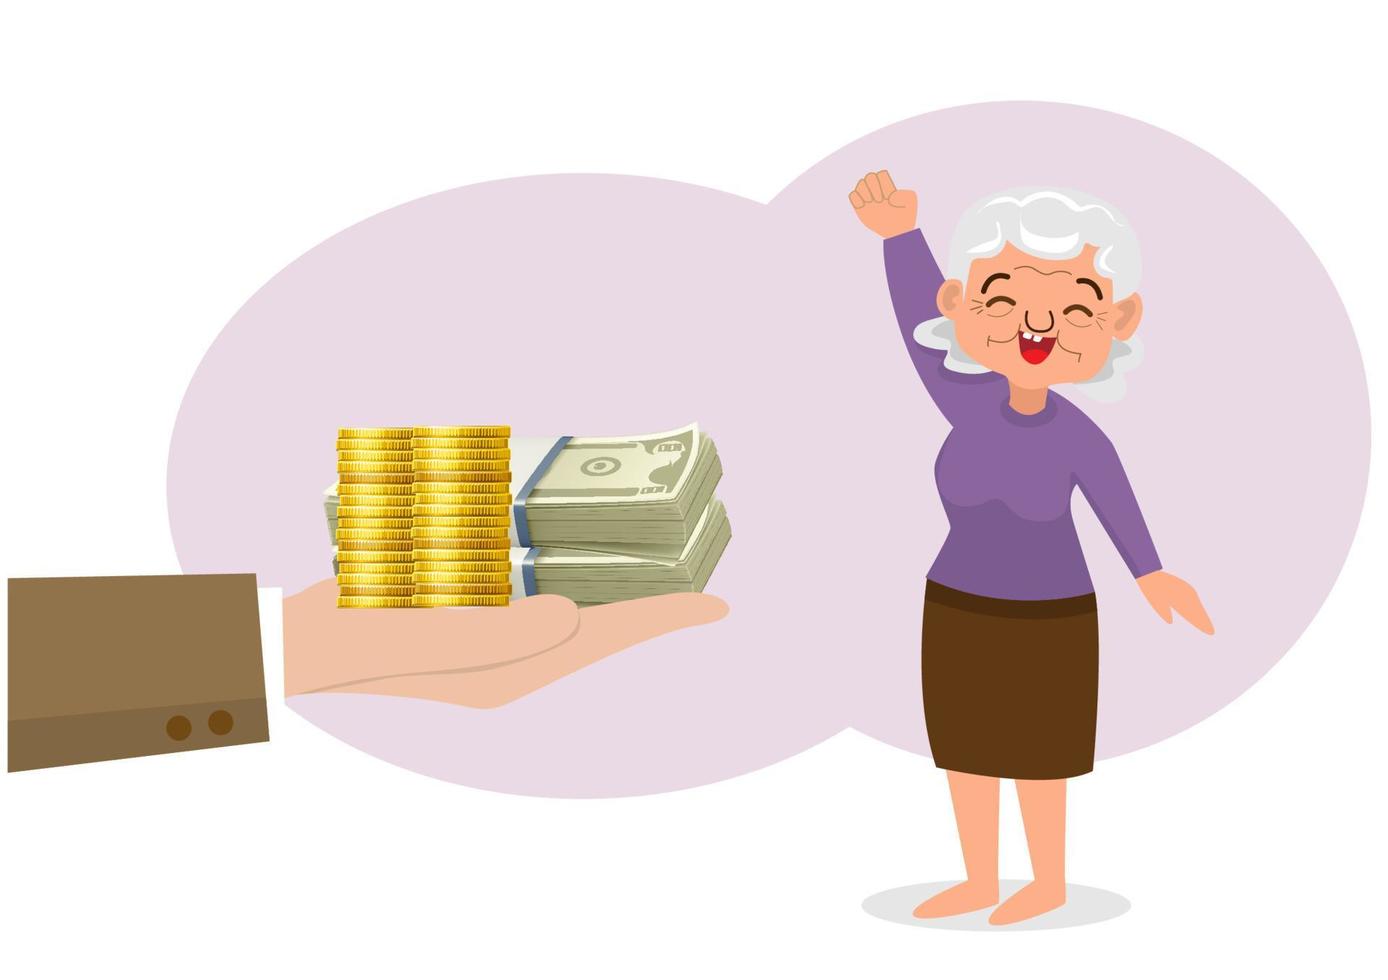 idee imprenditoriali e guadagni da spendere dopo il pensionamento, il personaggio di una donna anziana ottiene un sacco di soldi. vettore di illustrazione del fumetto in stile piatto